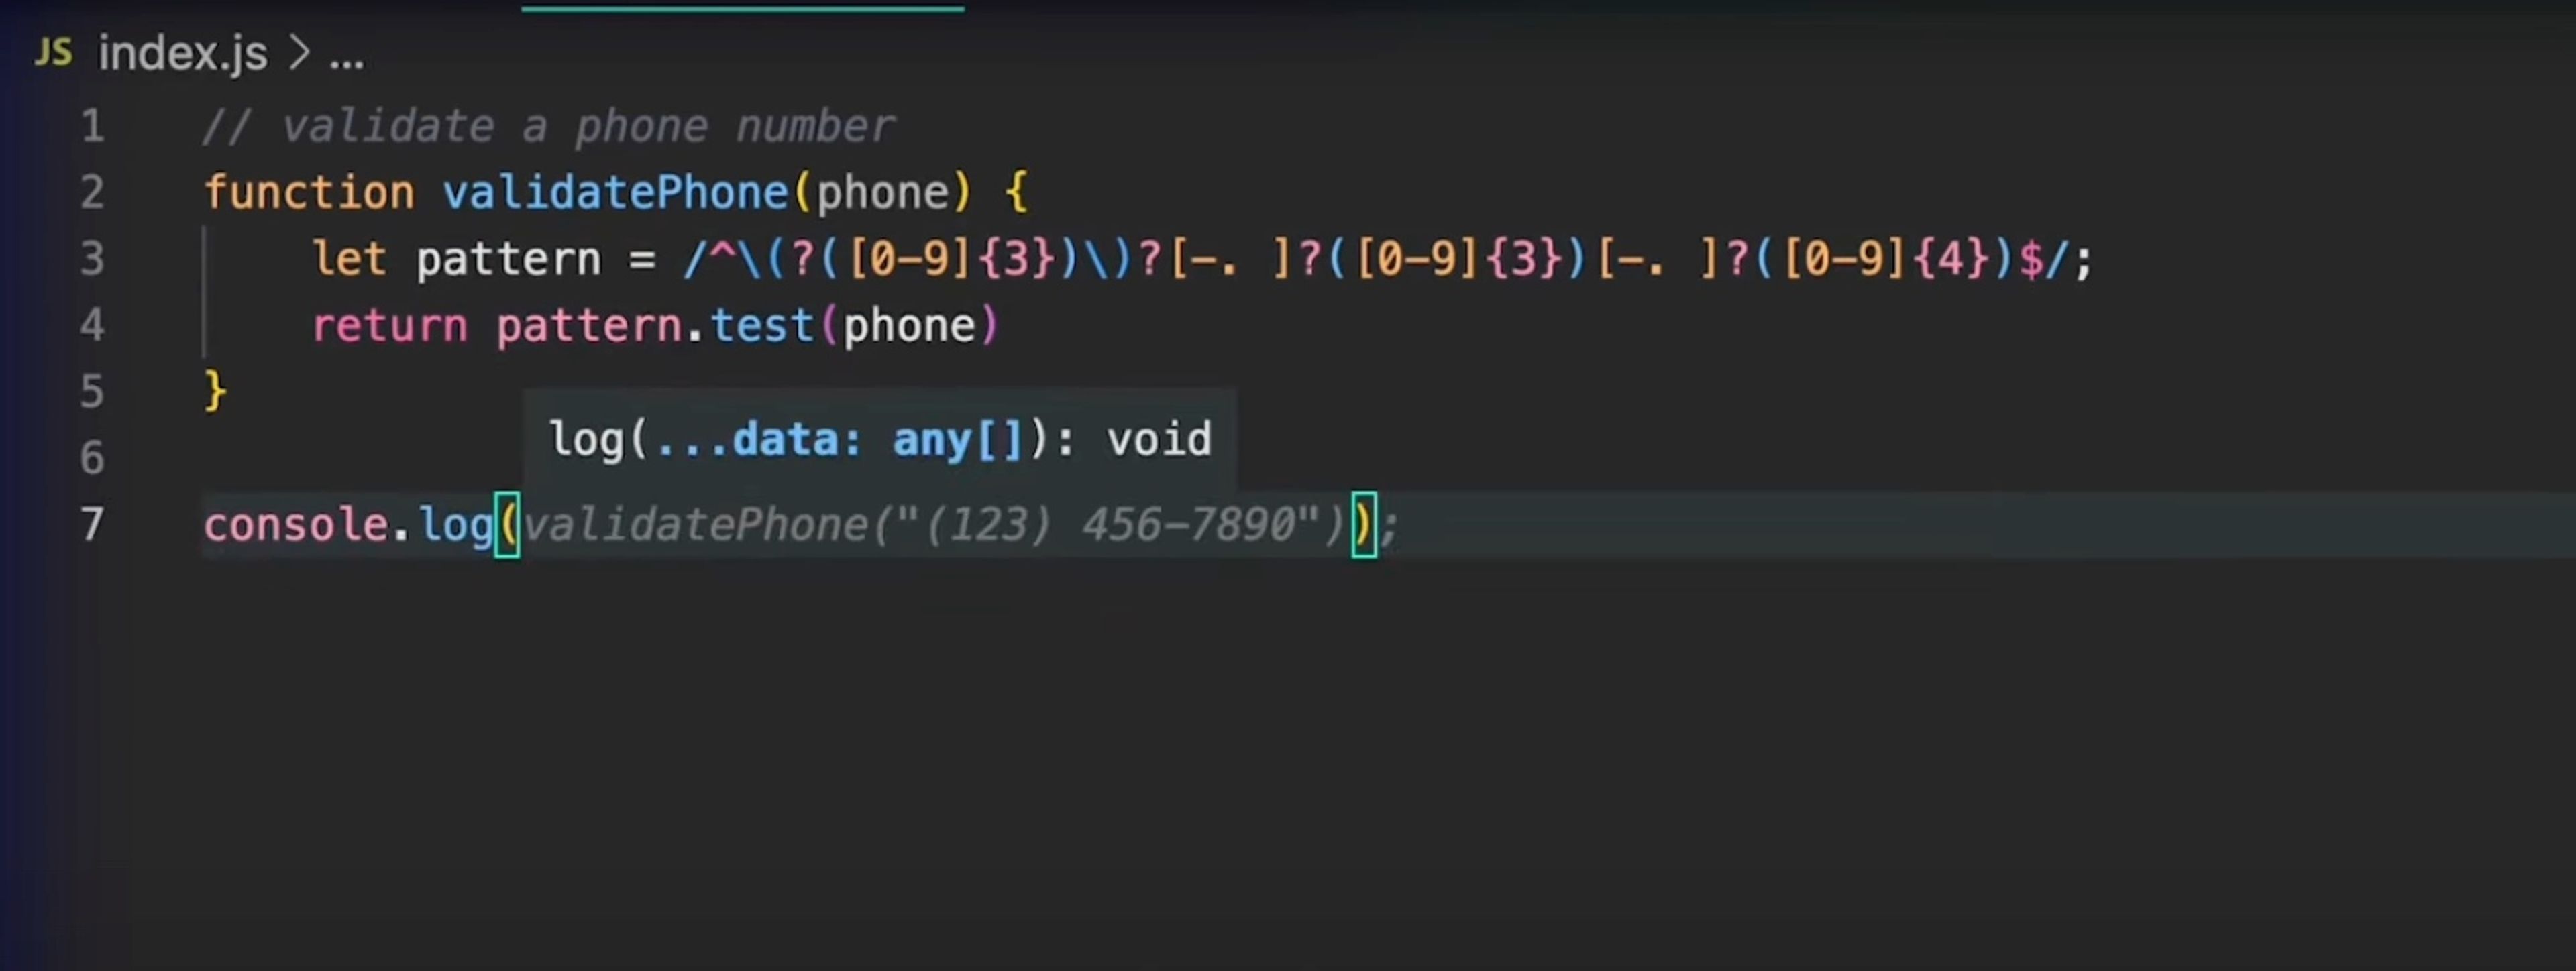 Copilot, la herramienta de programación por IA de Github, ayuda a los desarrolladores a compilar código más rápido. 